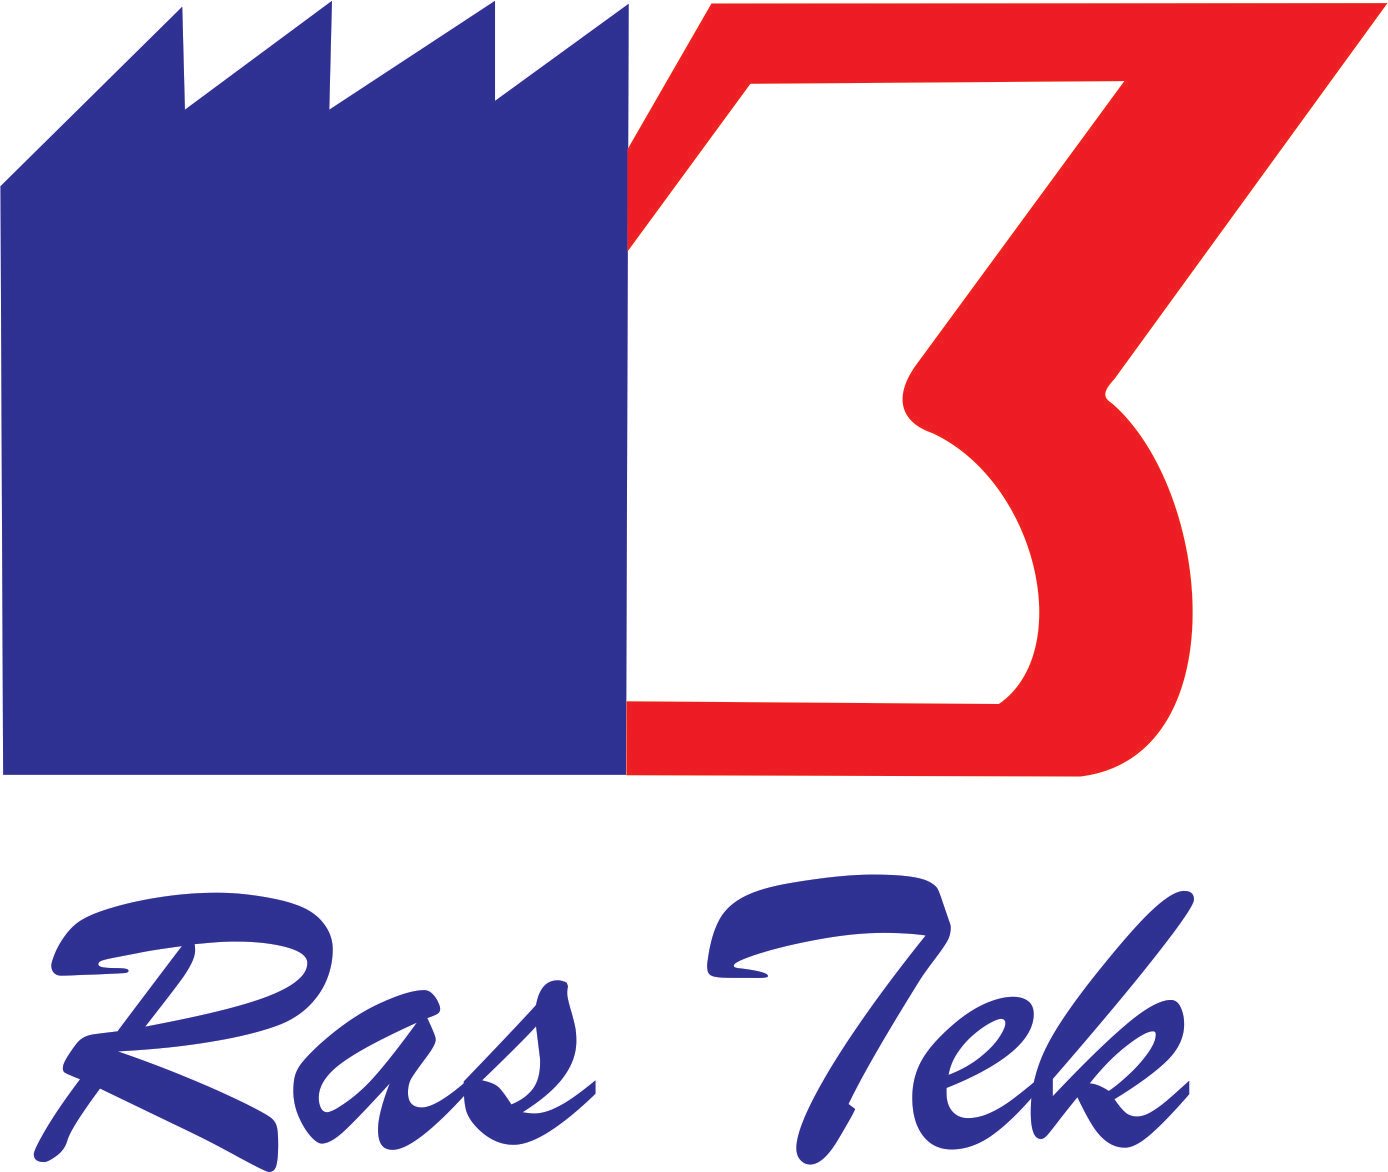 Ras Tek Pvt. Ltd